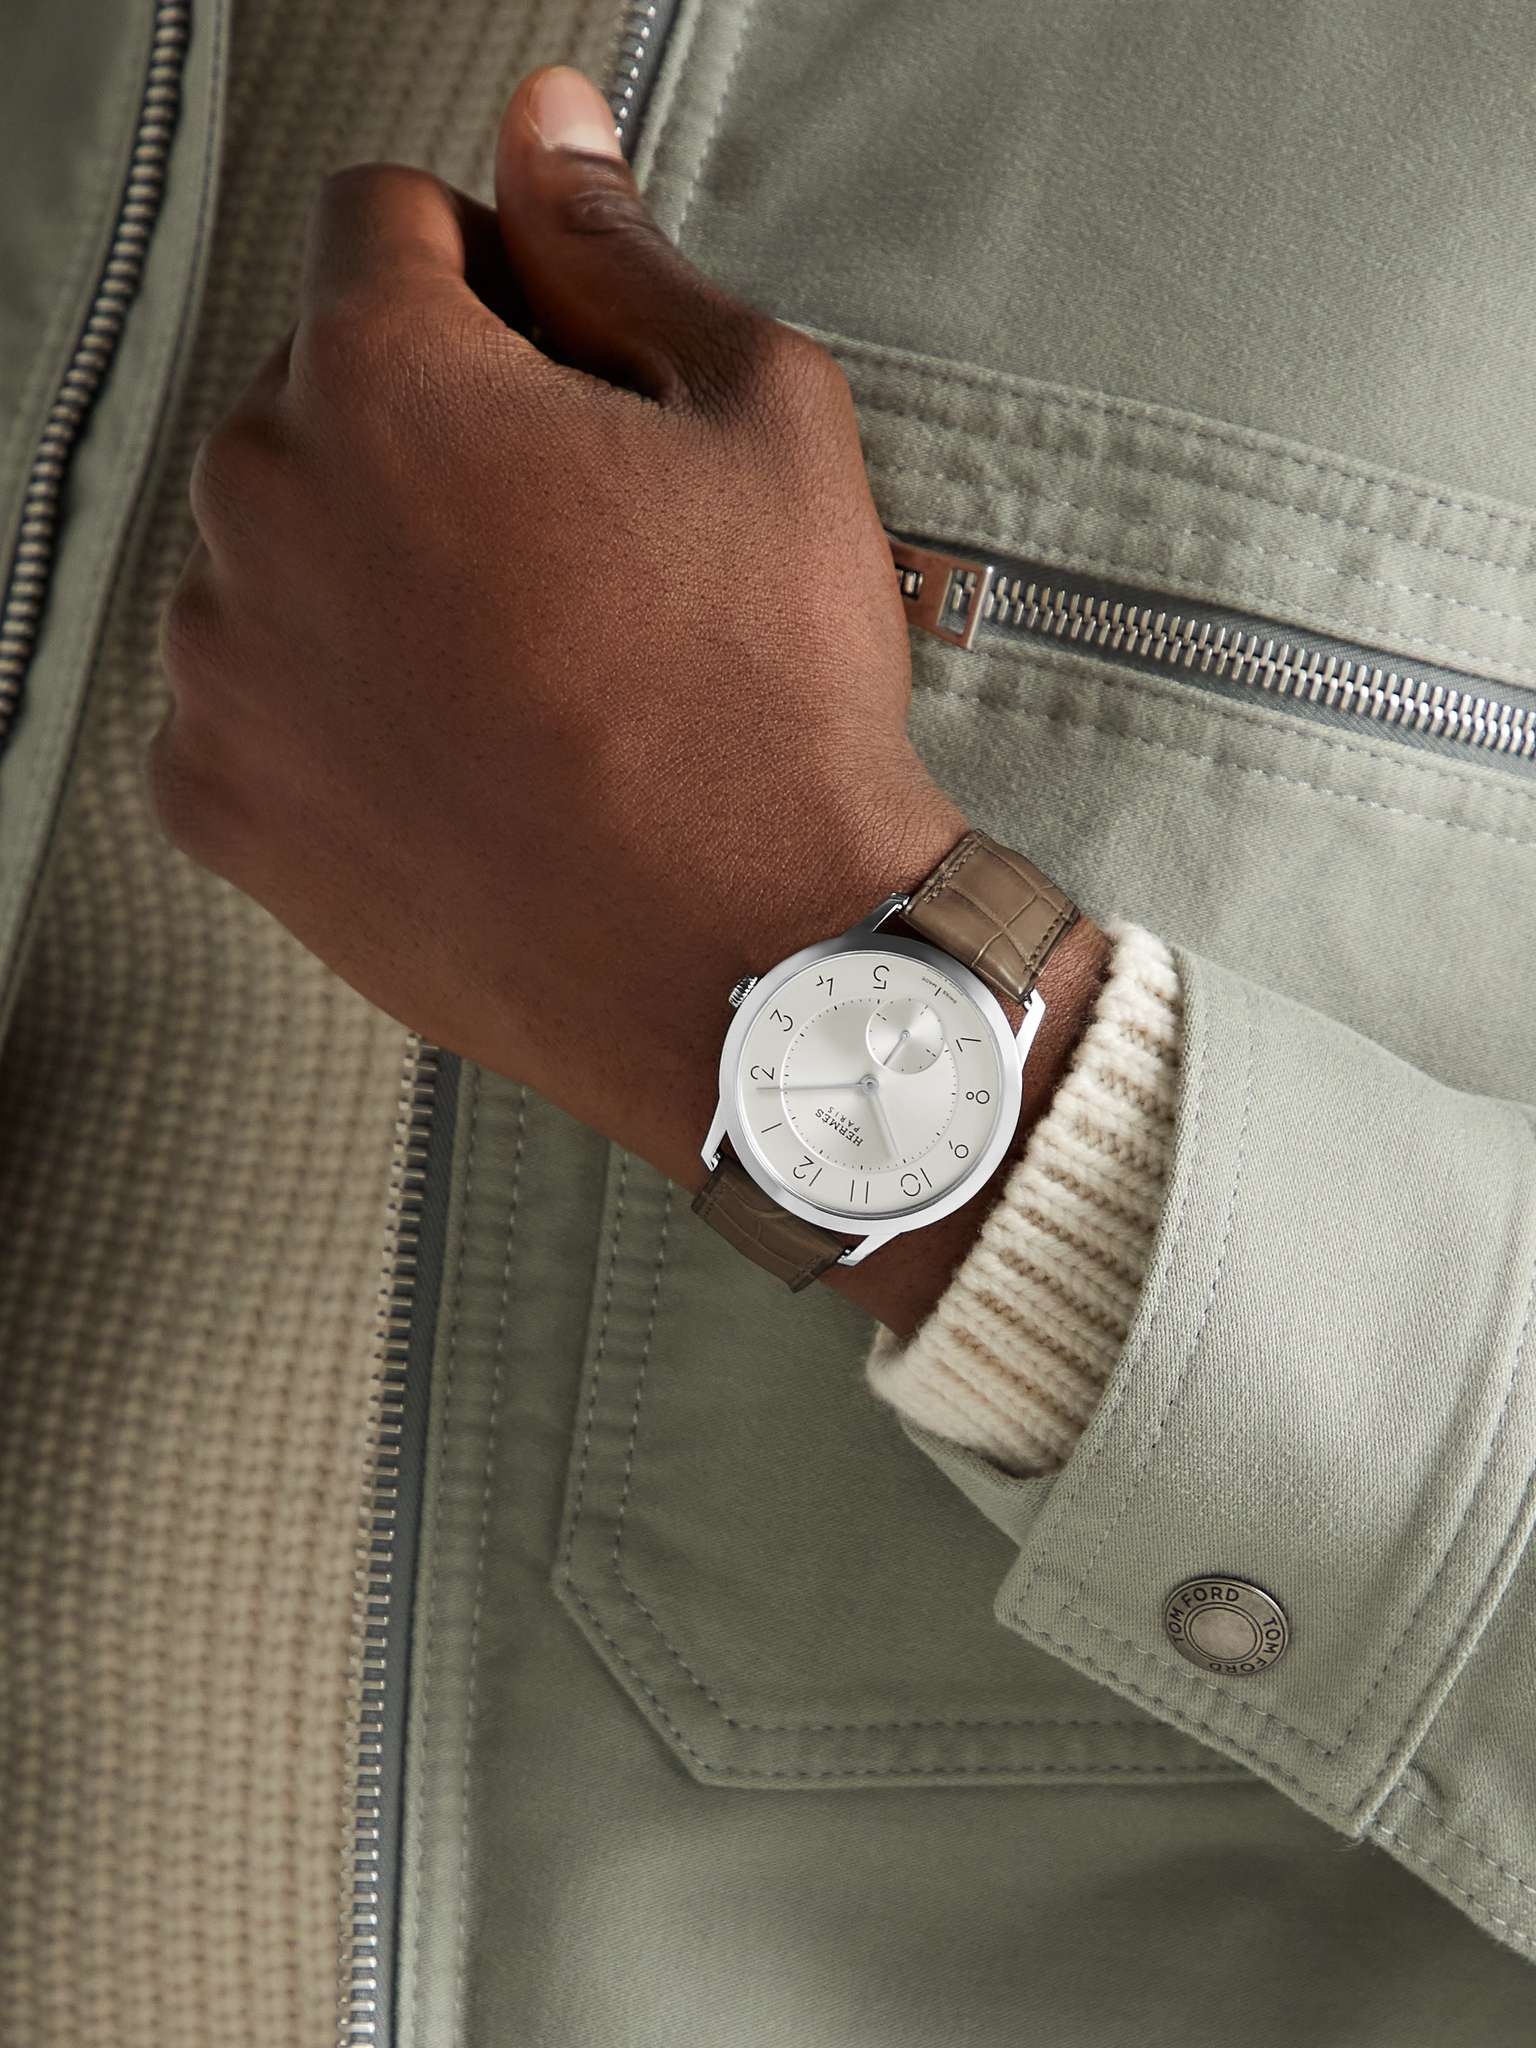 Slim d'Hermès Acier Automatic 39.5mm Stainless Steel and Alligator Watch, Ref. No. W045266WW00 - 2